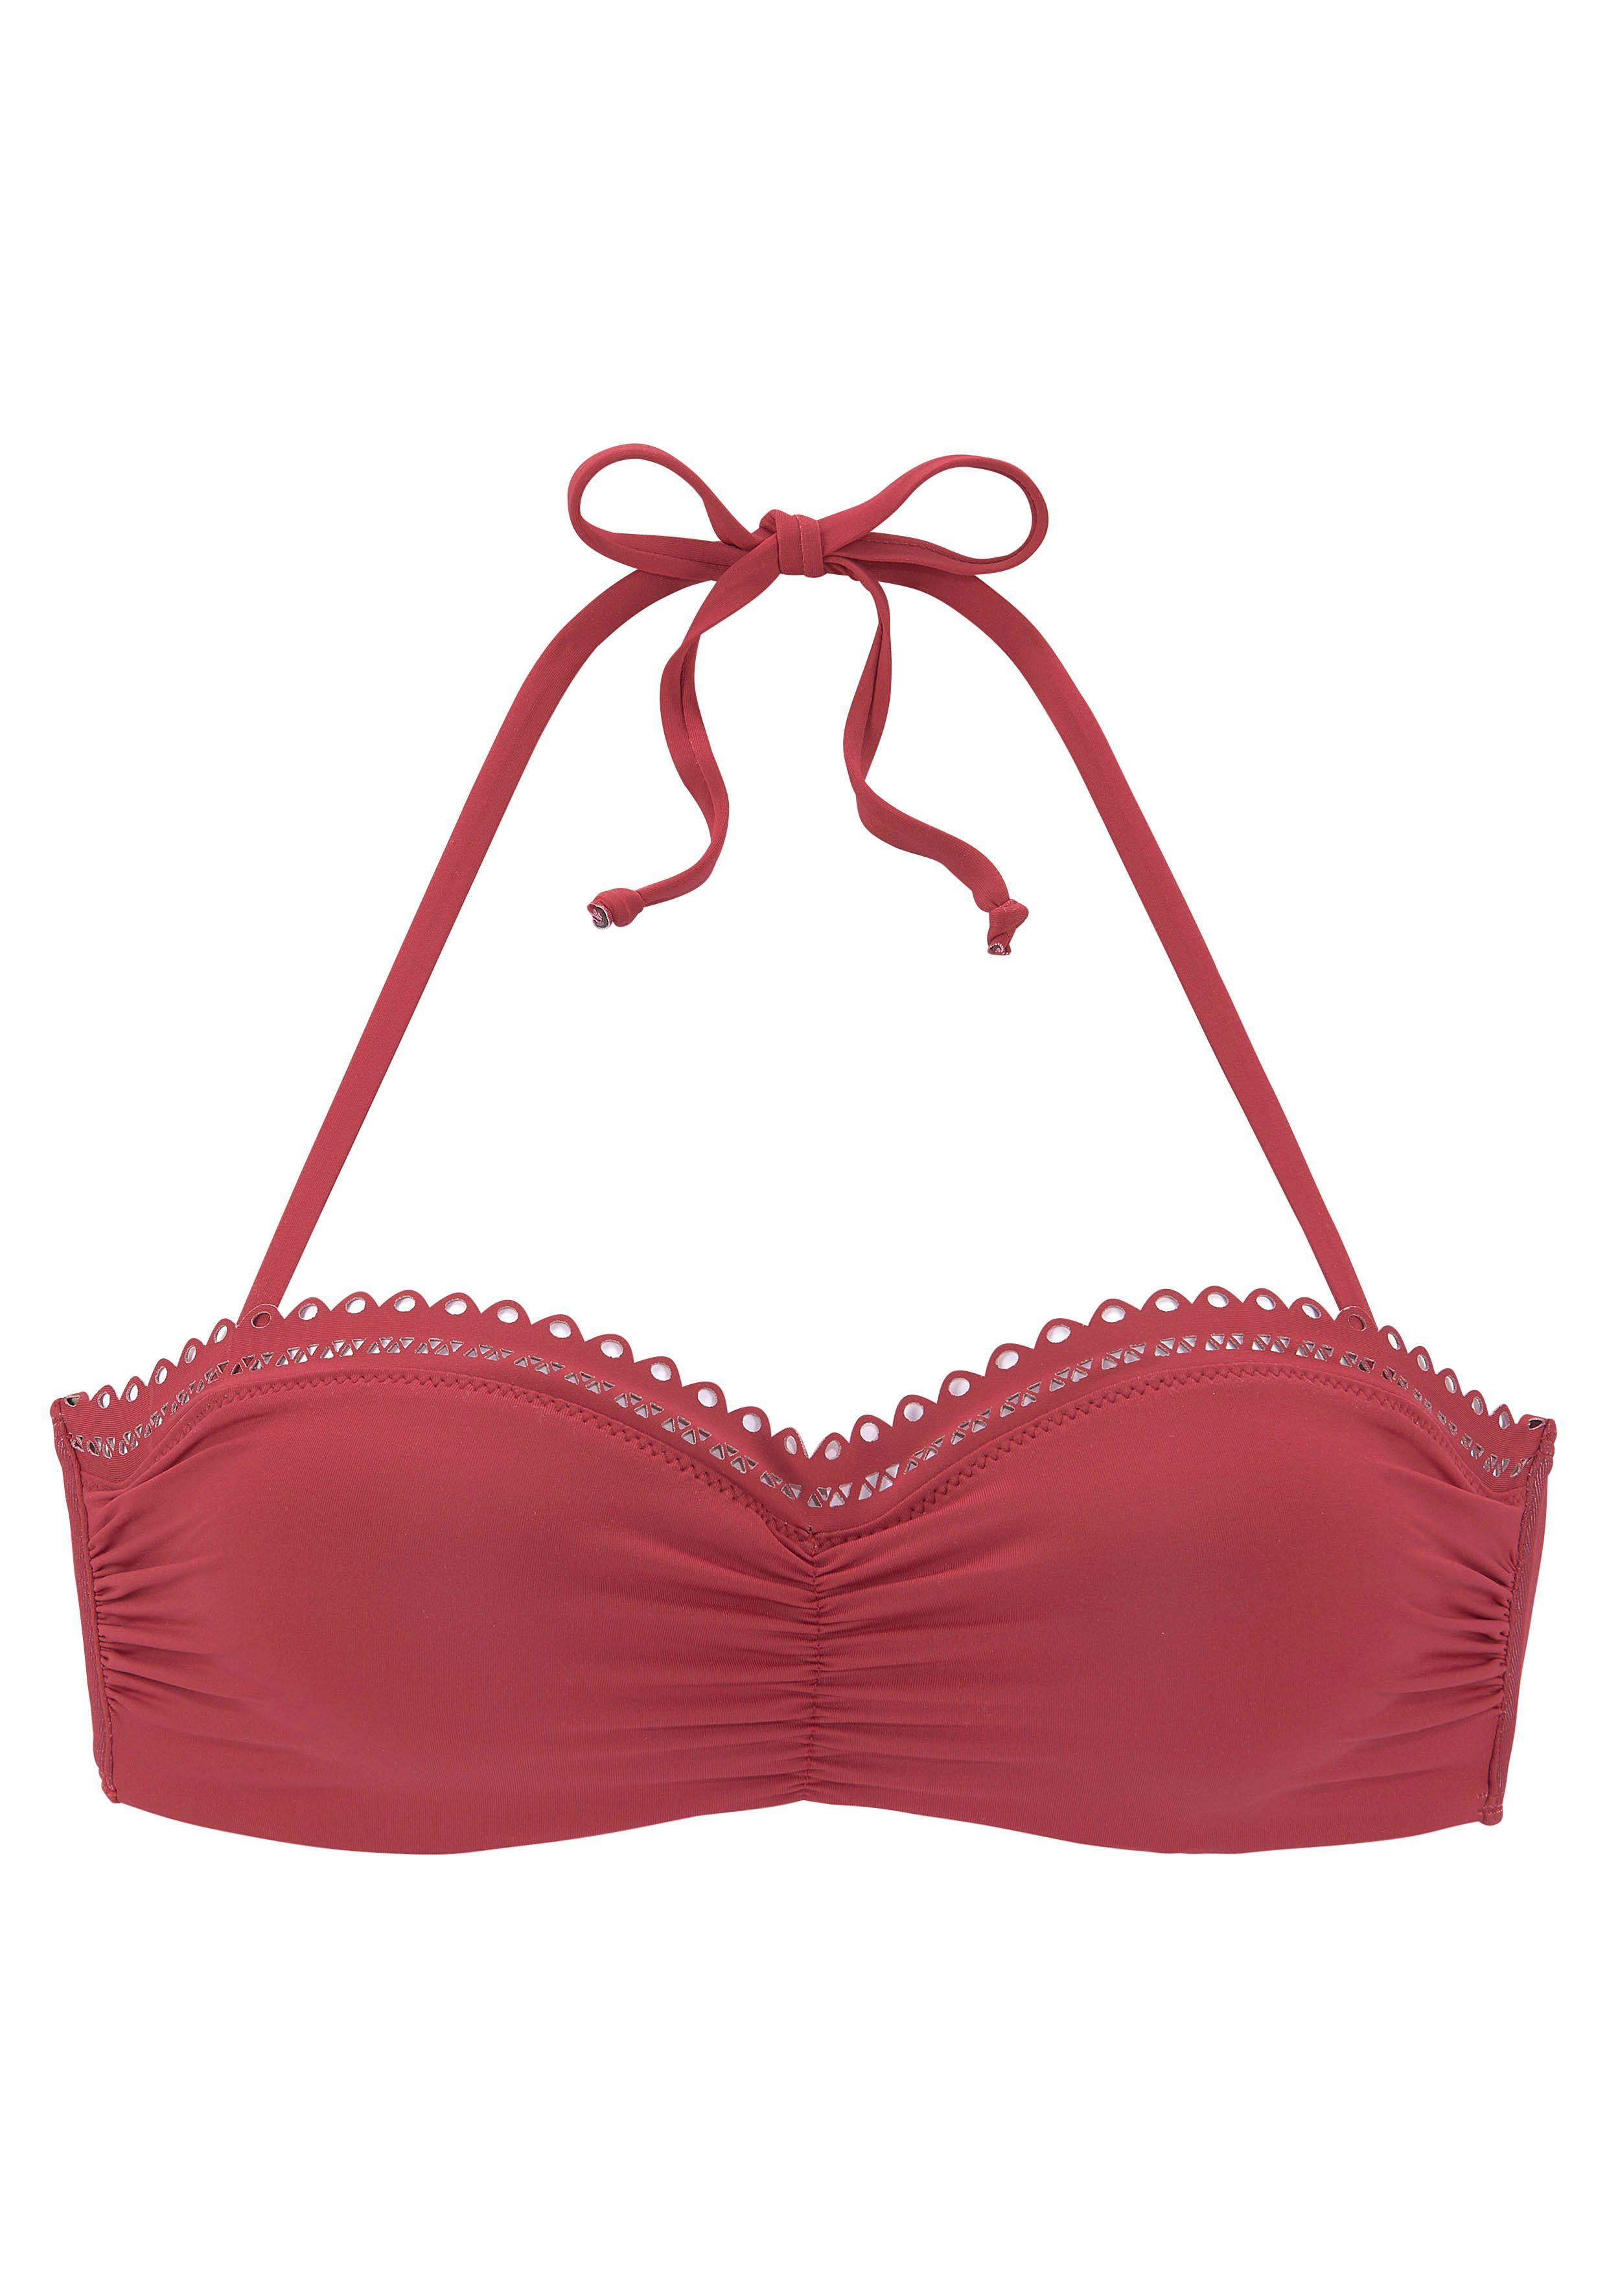 s.oliver red label beachwear beugelbikinitop in bandeaumodel aiko met gehaakte look rood